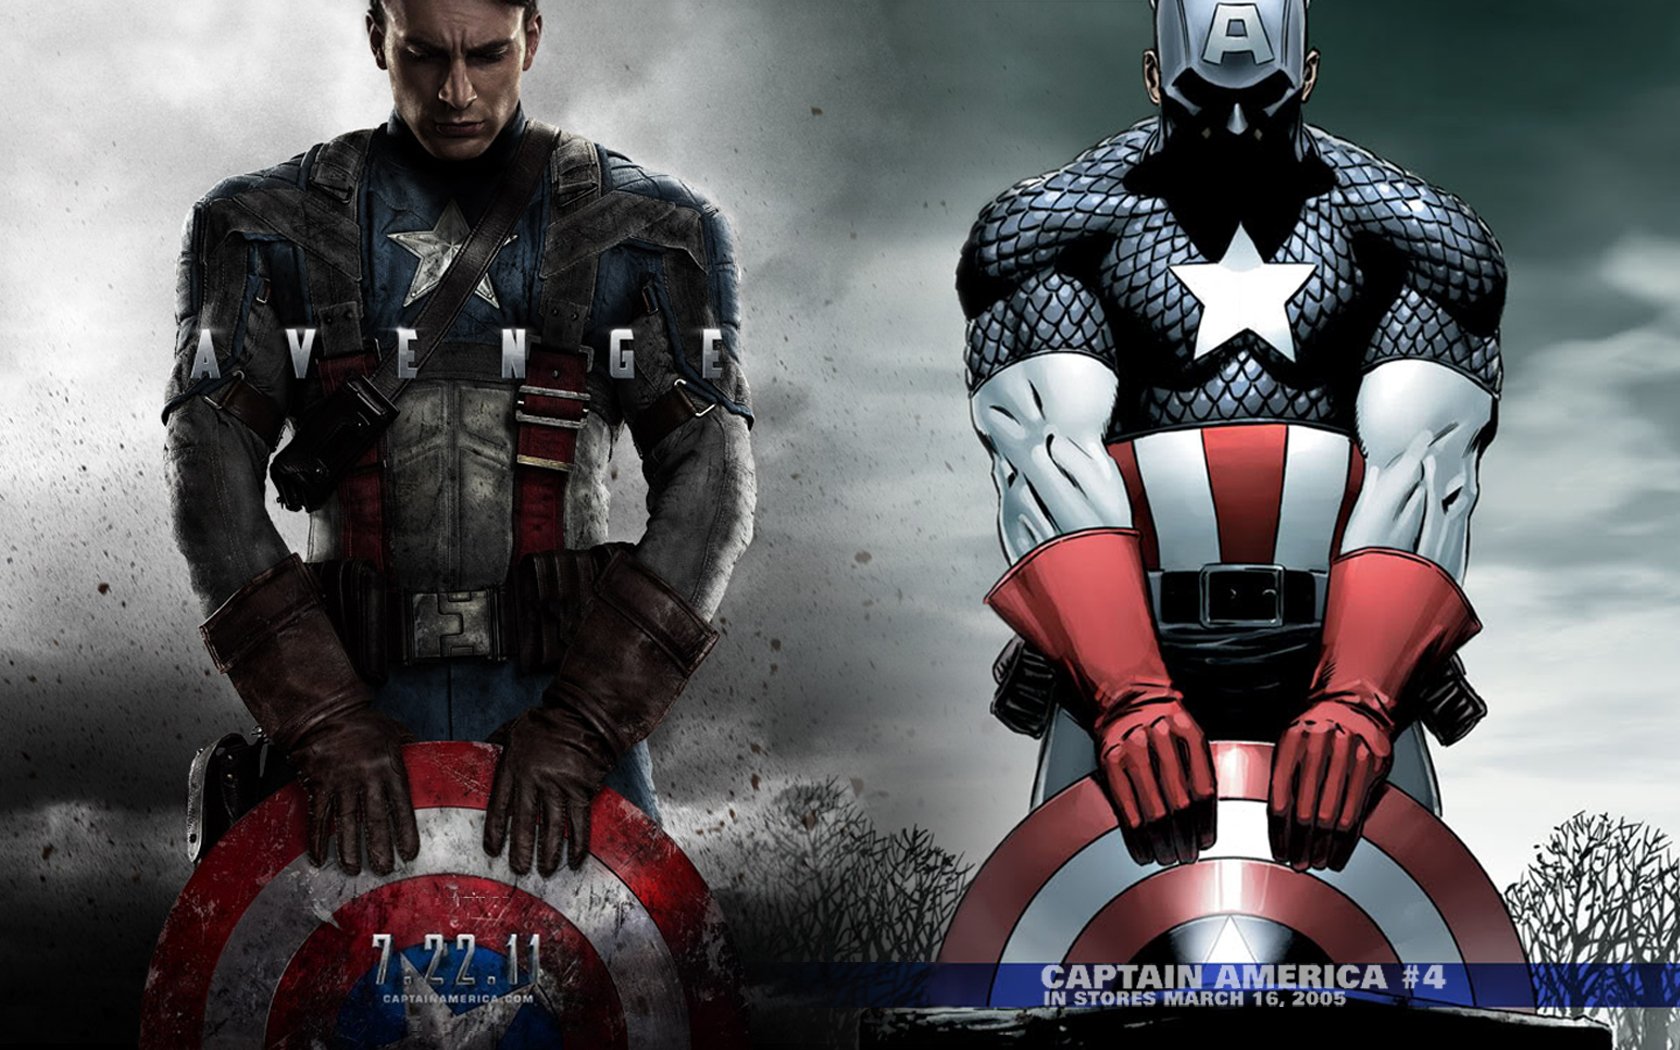 キャピタンアメリカ壁紙,スーパーヒーロー,架空の人物,映画,ヒーロー,キャプテン・アメリカ